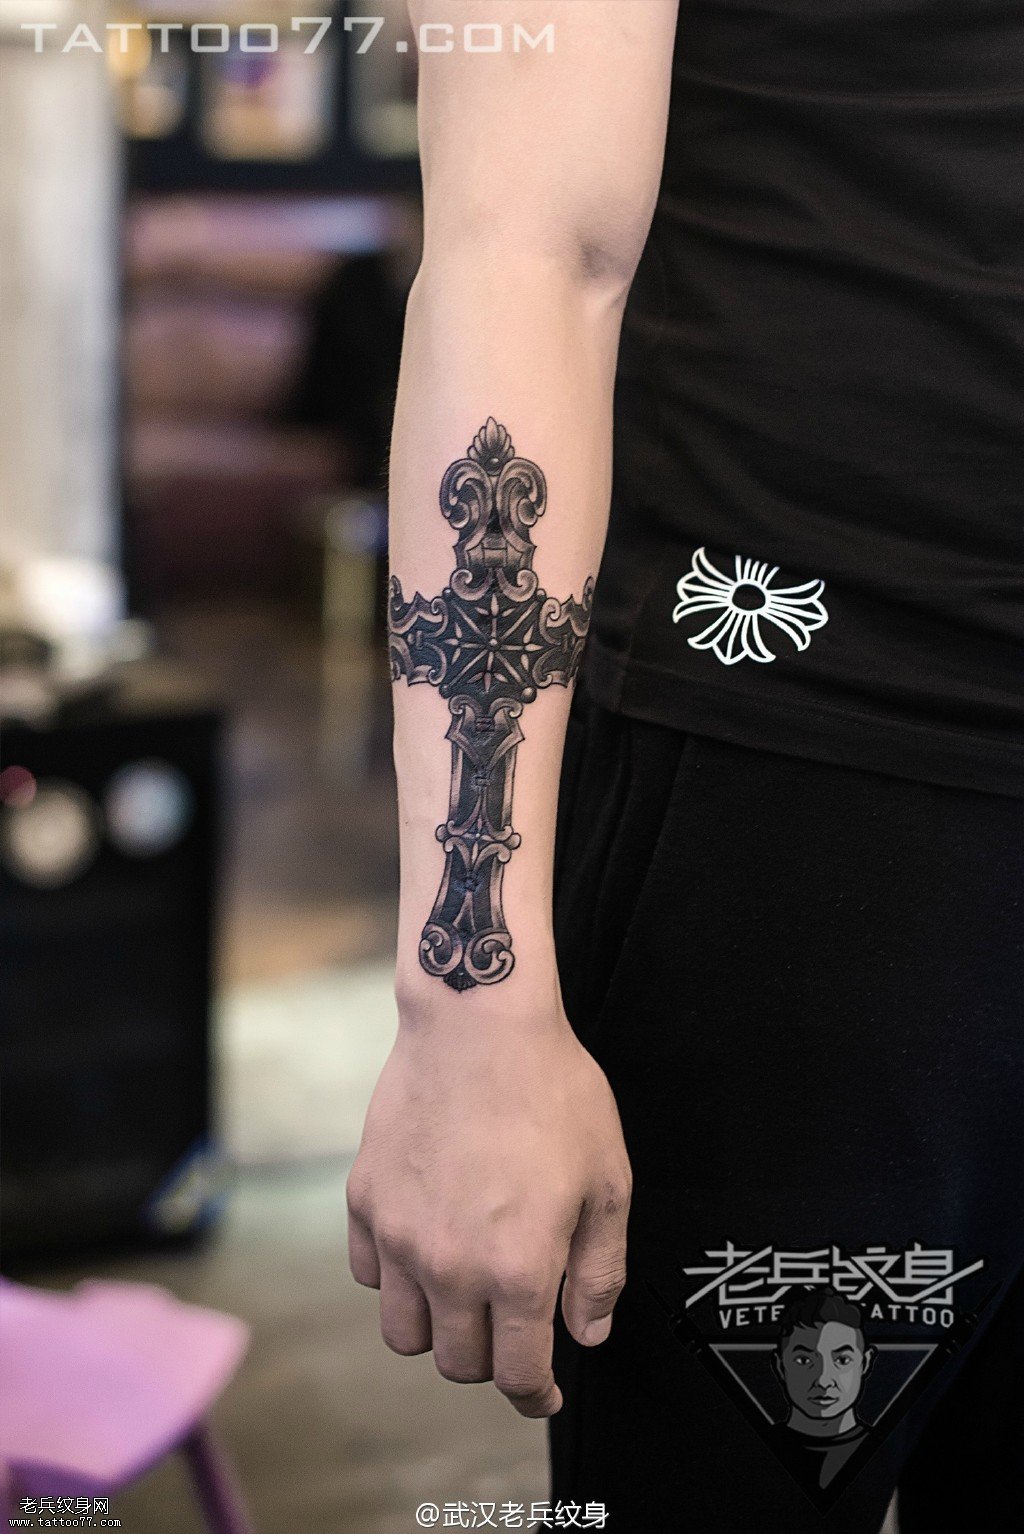 手部十字架纹身图案作品遮盖疤痕